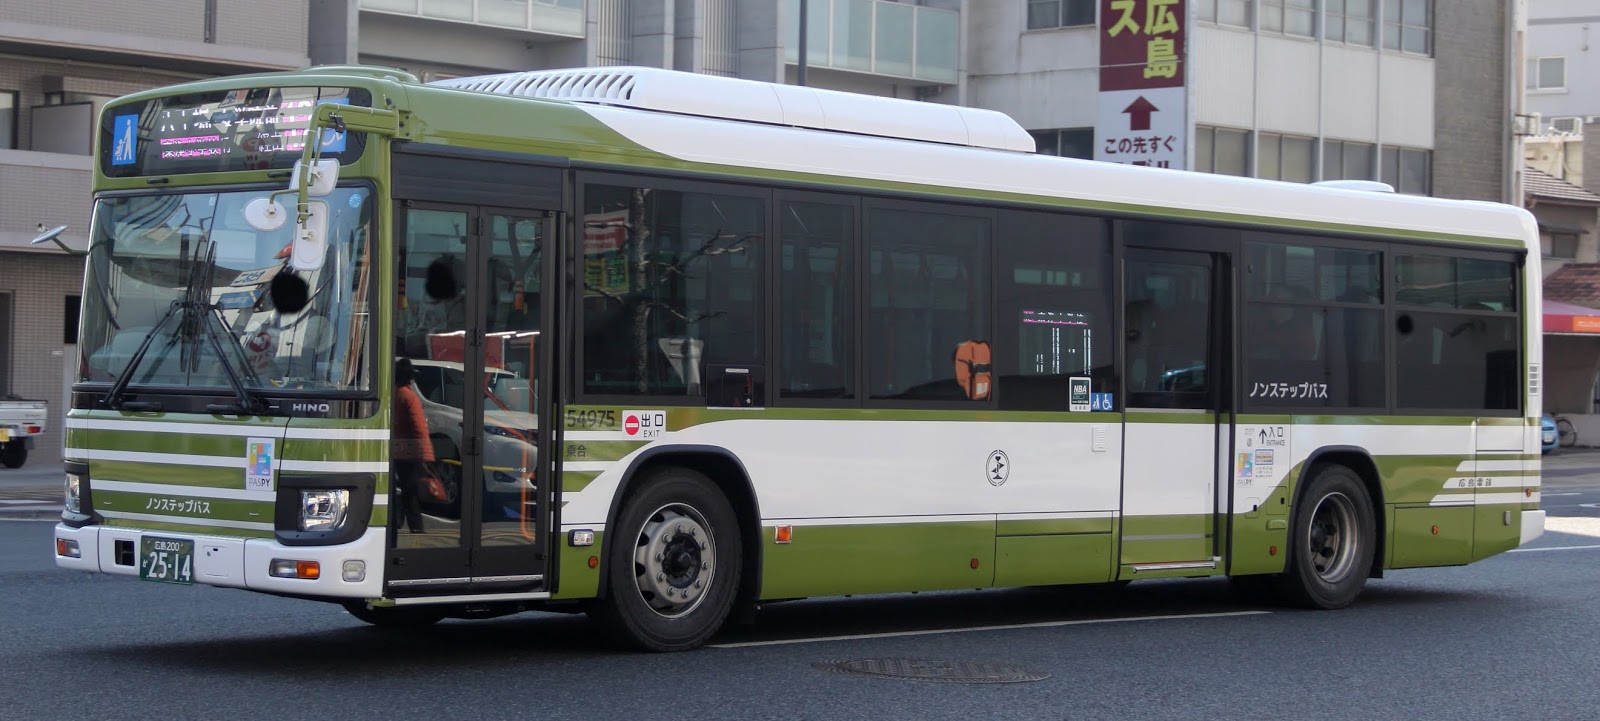 広島のバス 広電バス 広島0か2514